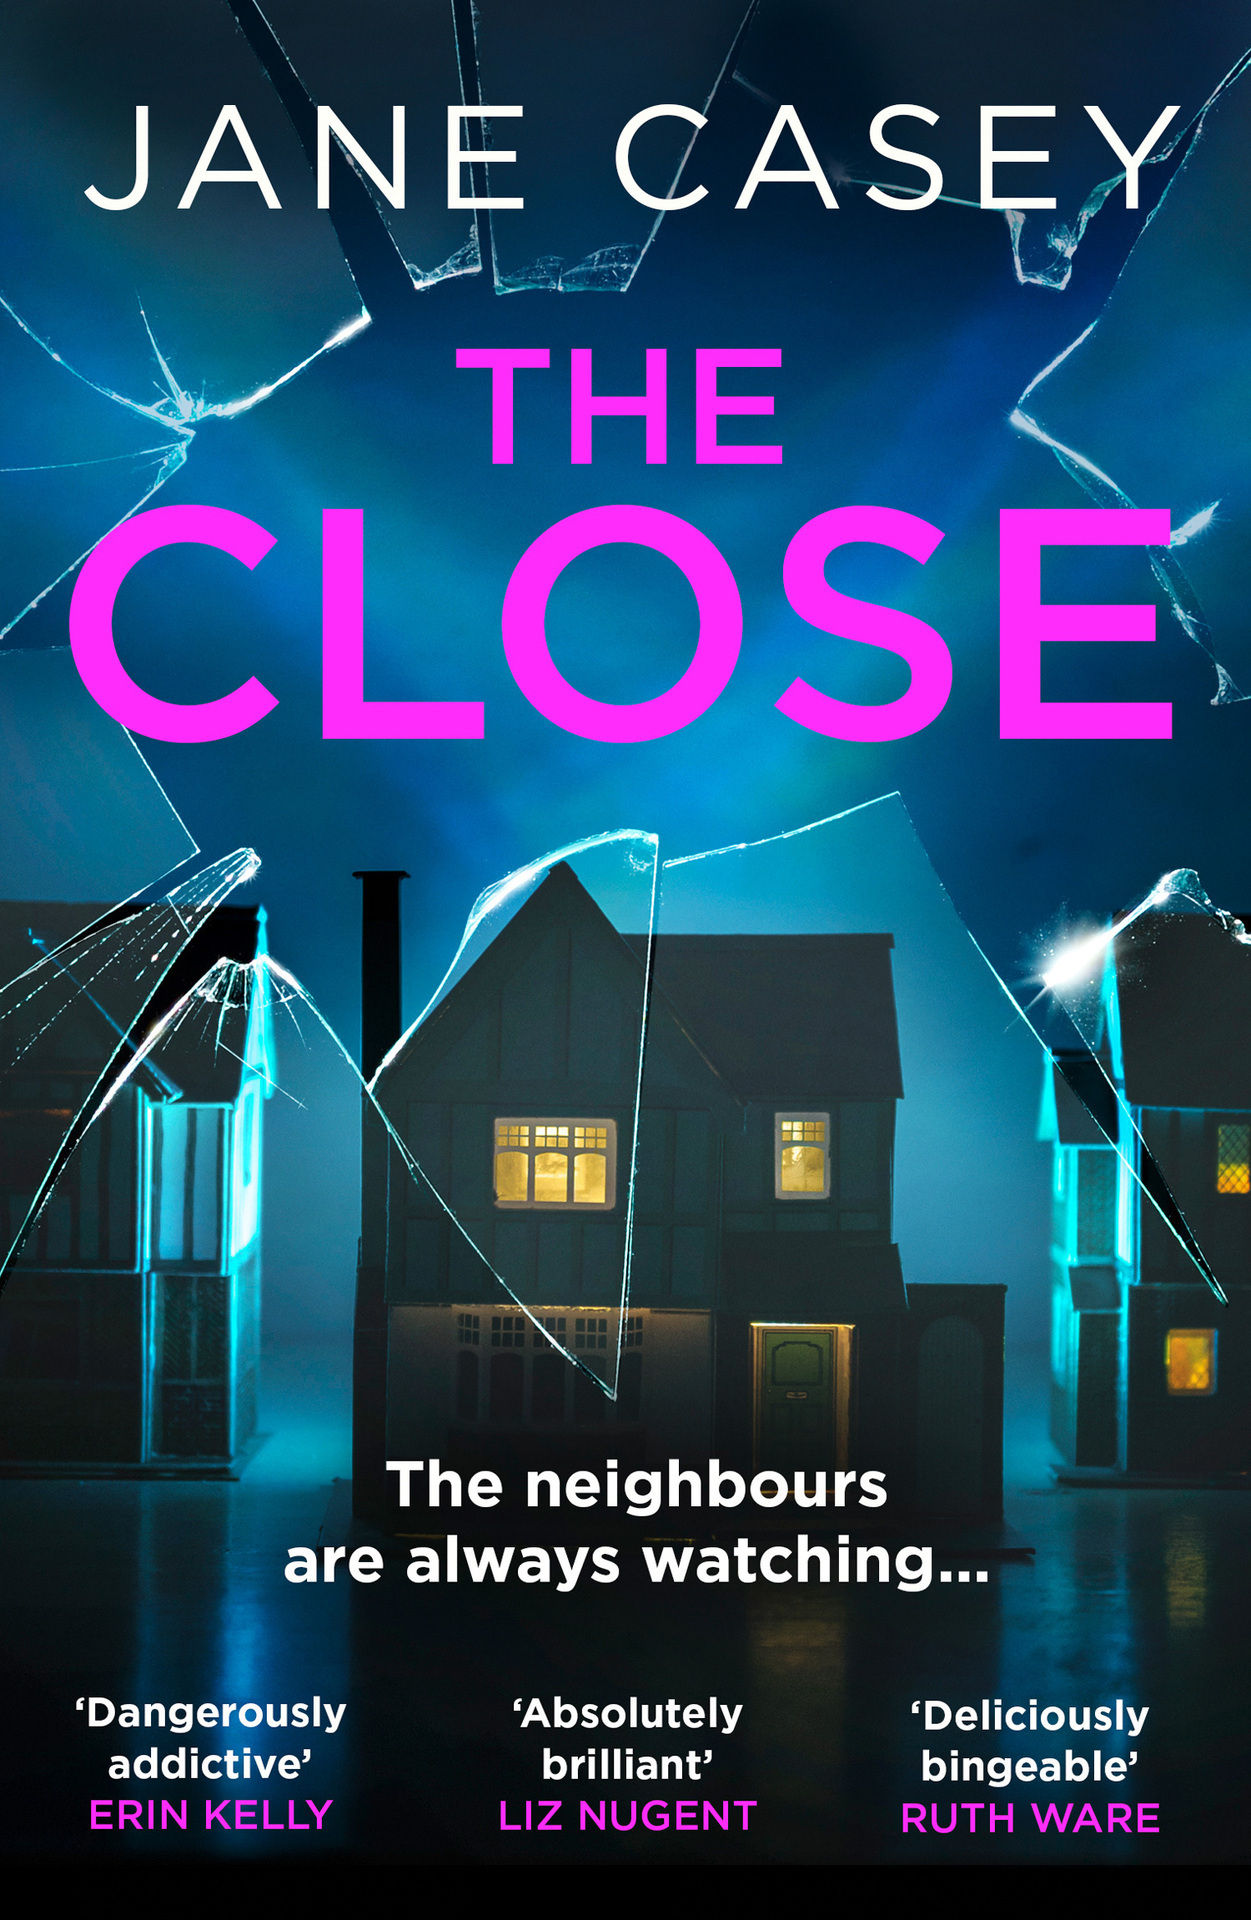 The Close (HarperCollins)